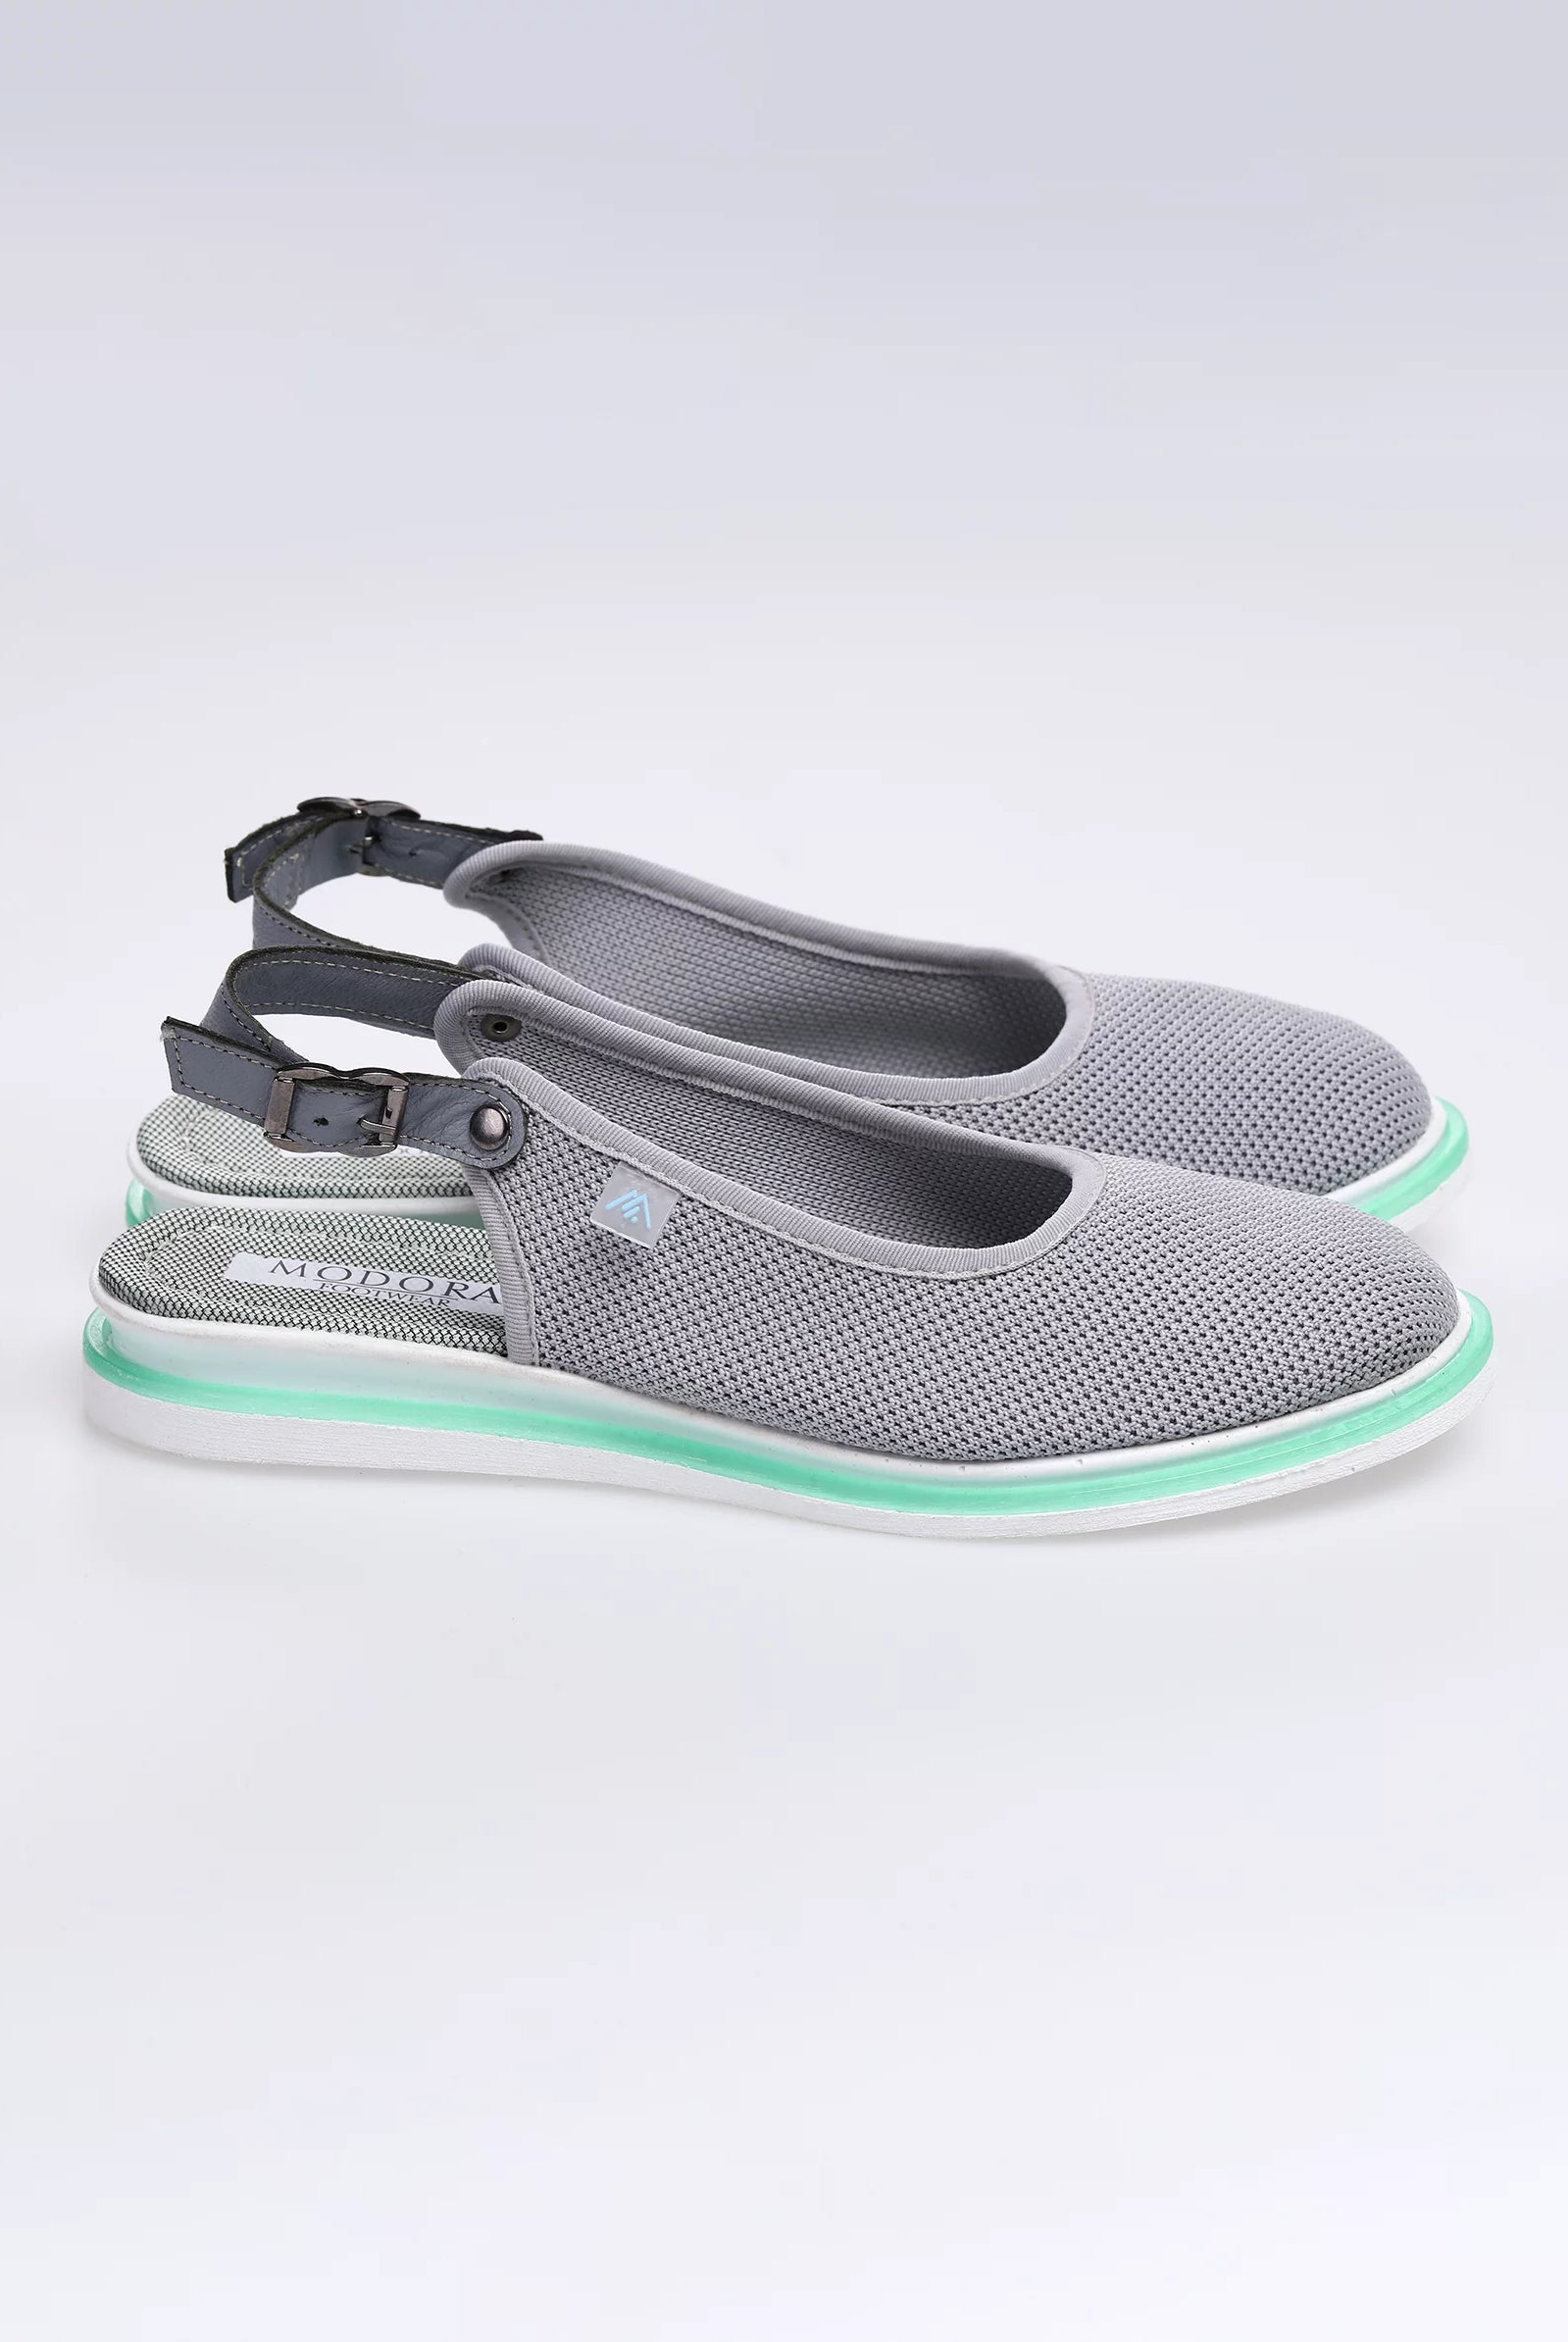 grey flat shoes uk